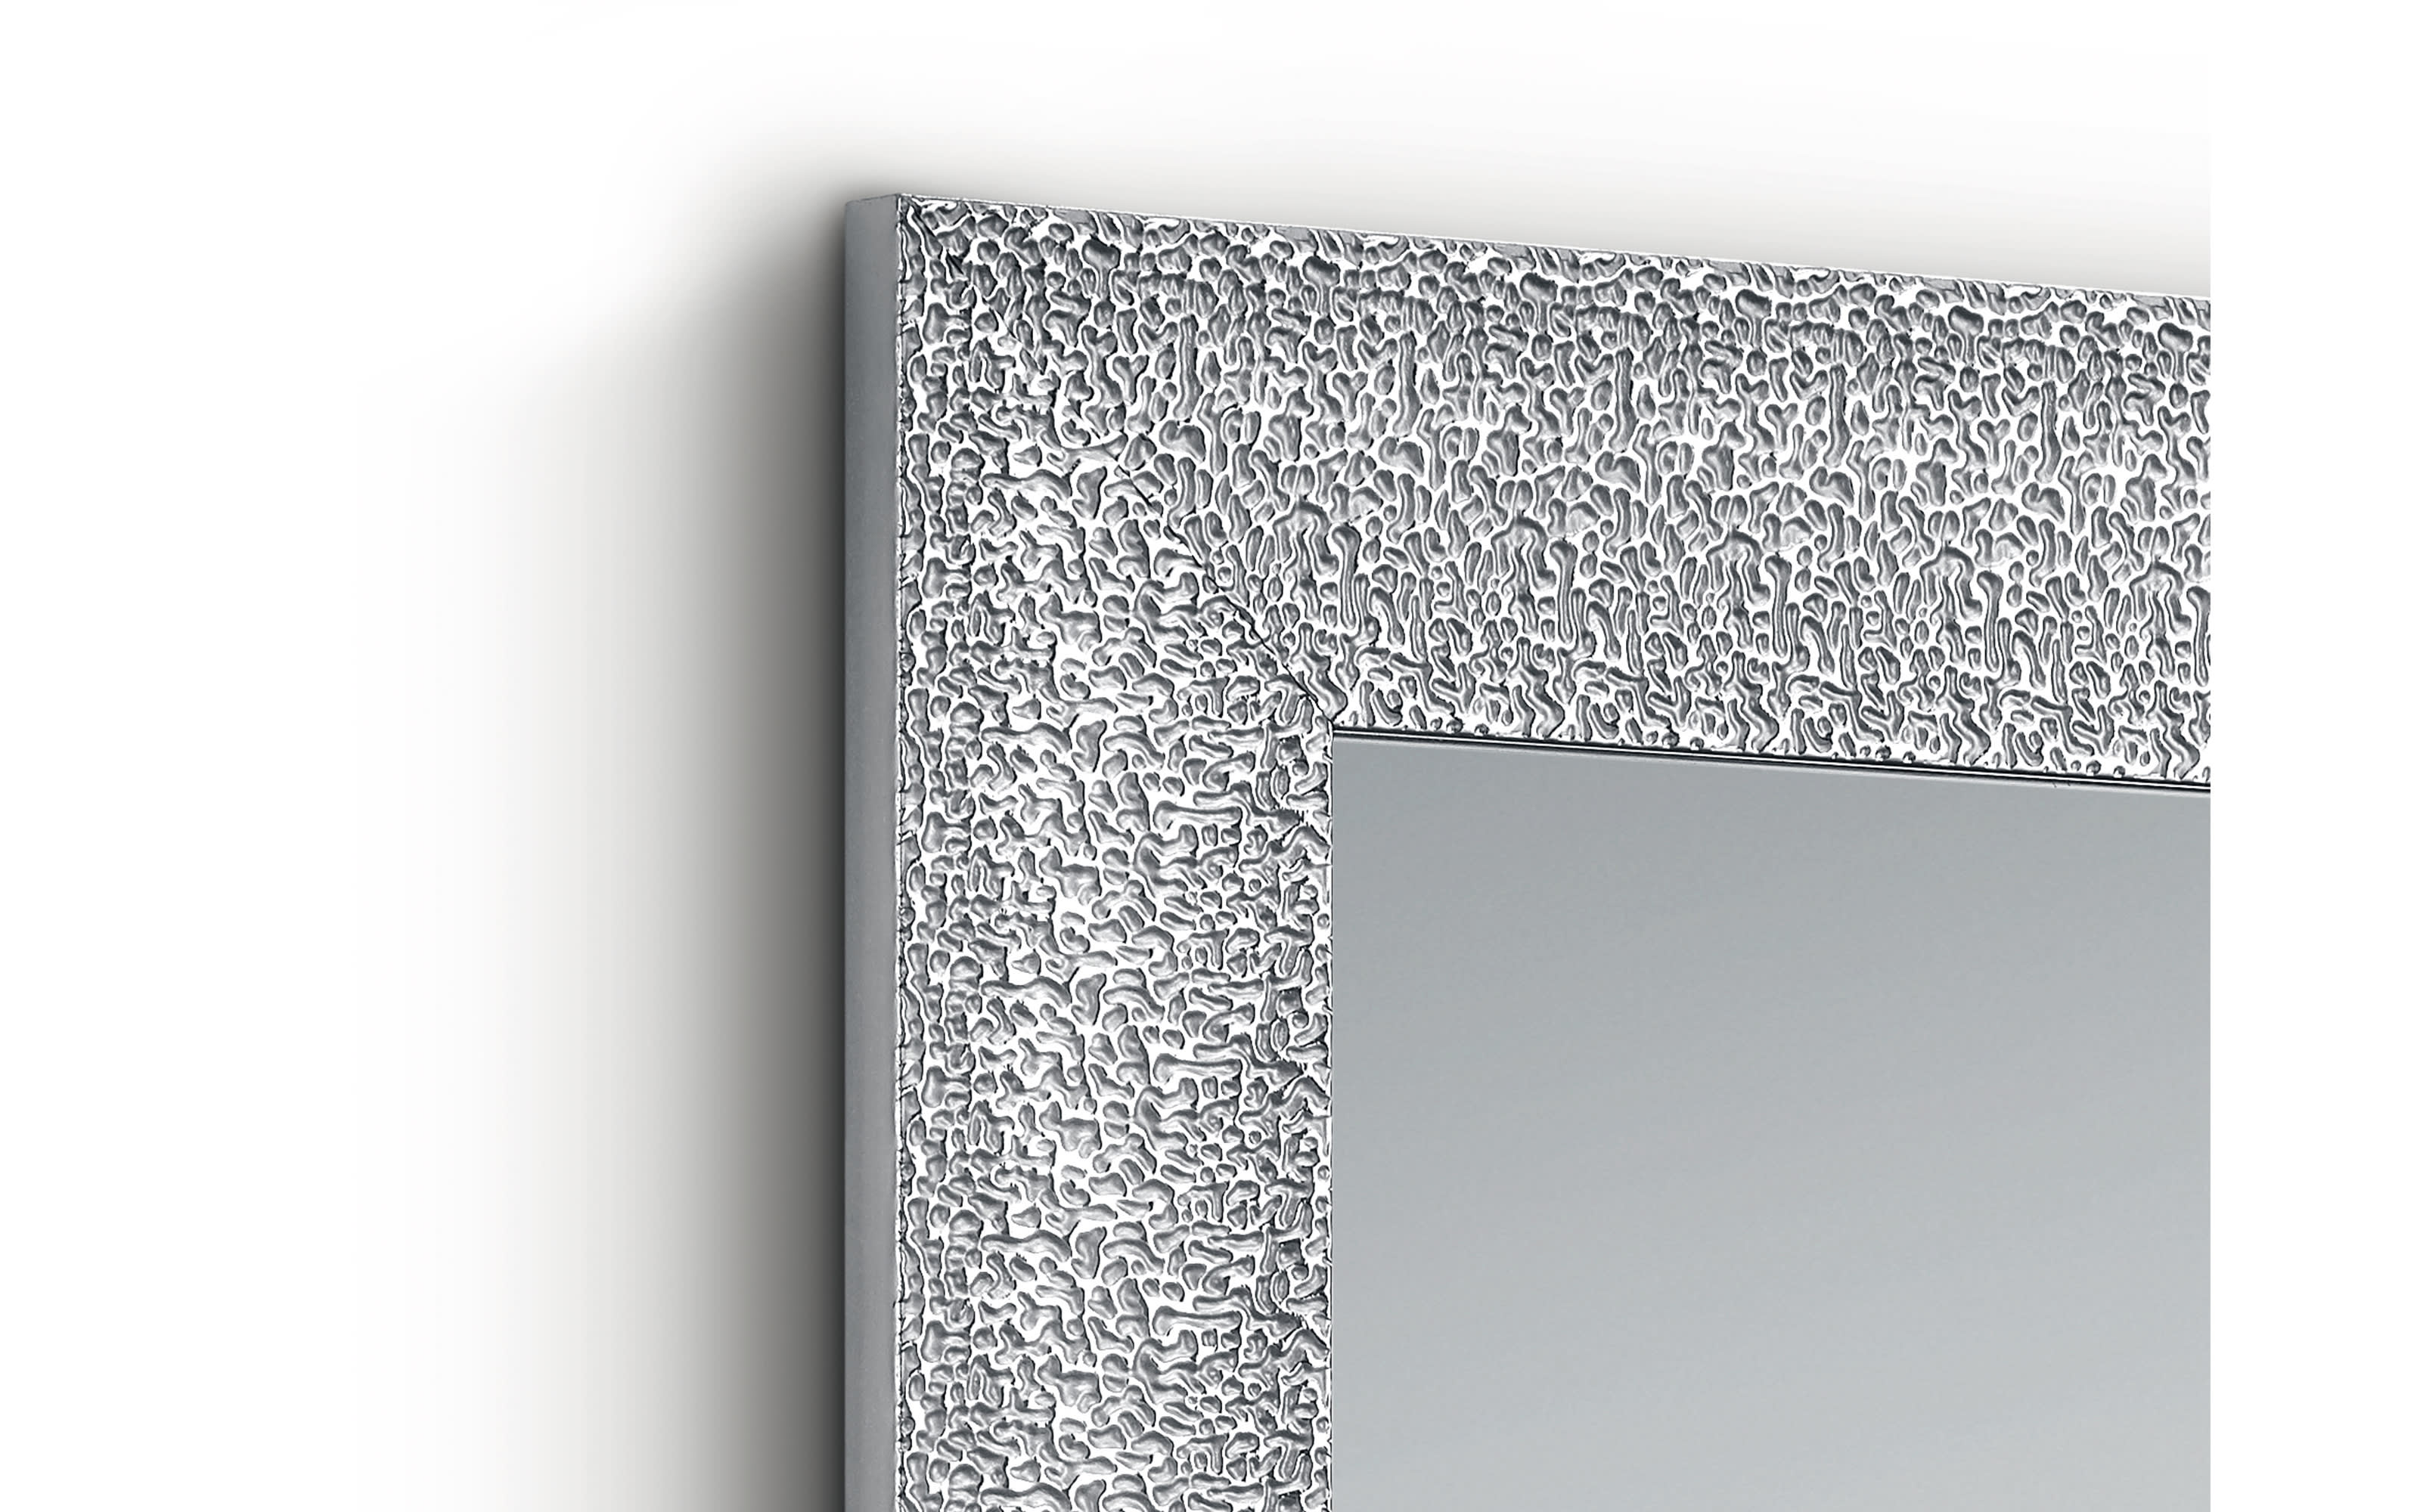 Rahmenspiegel Ariane in chromfarbig, 50 x 150 cm